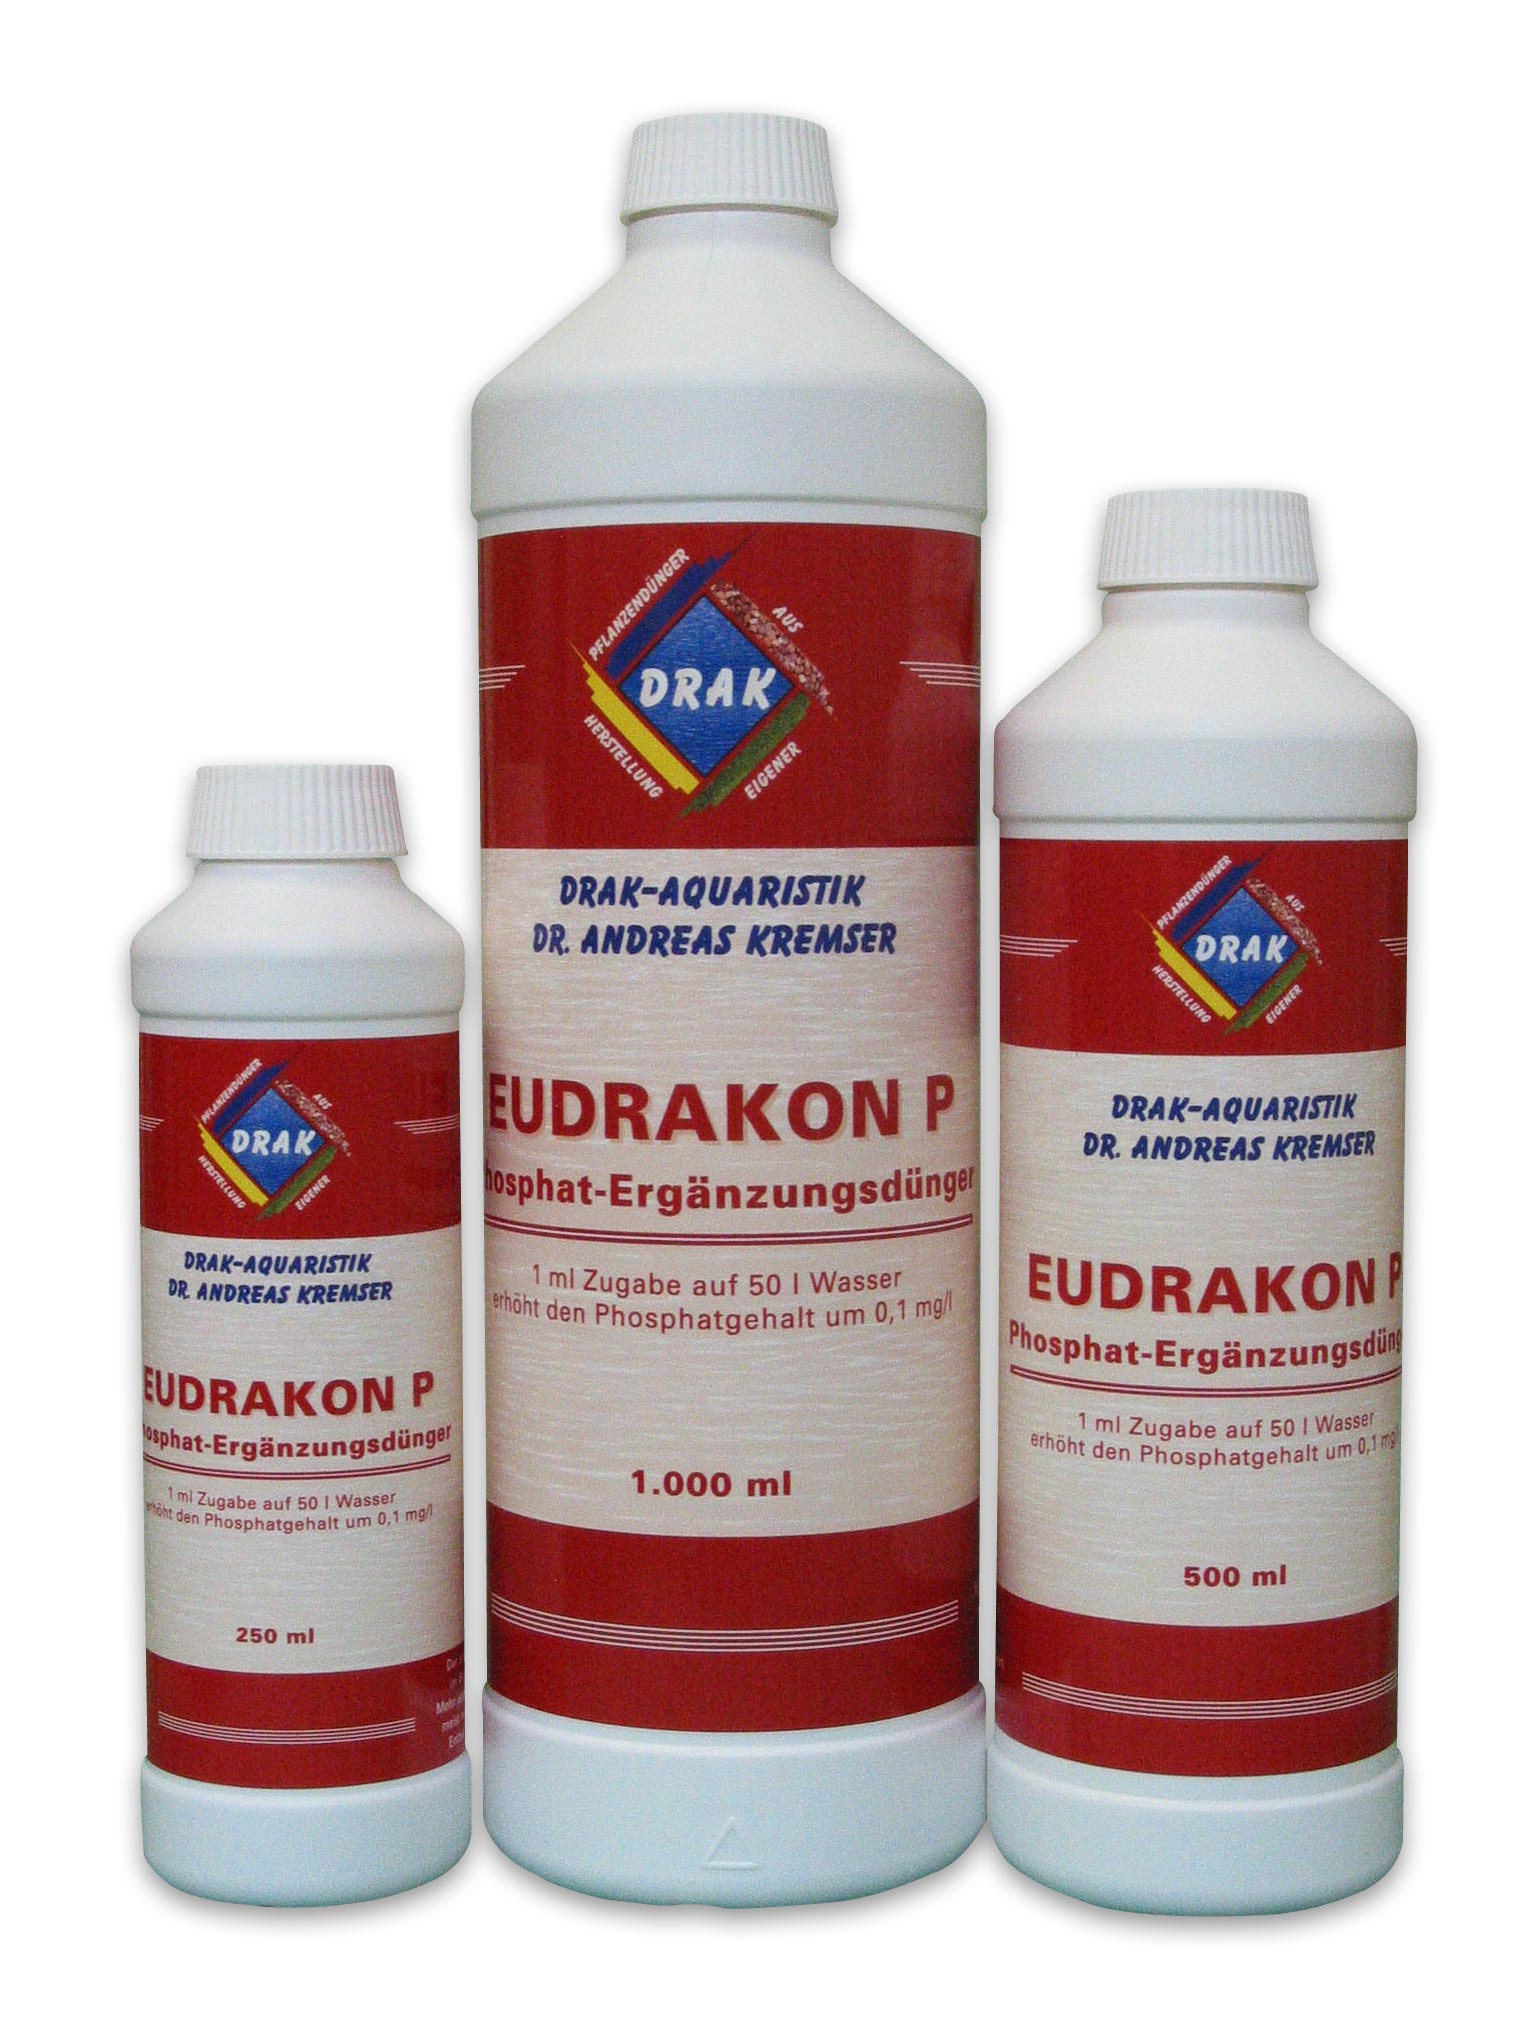 Eudrakon P Phosphate Fertilizer Bottles